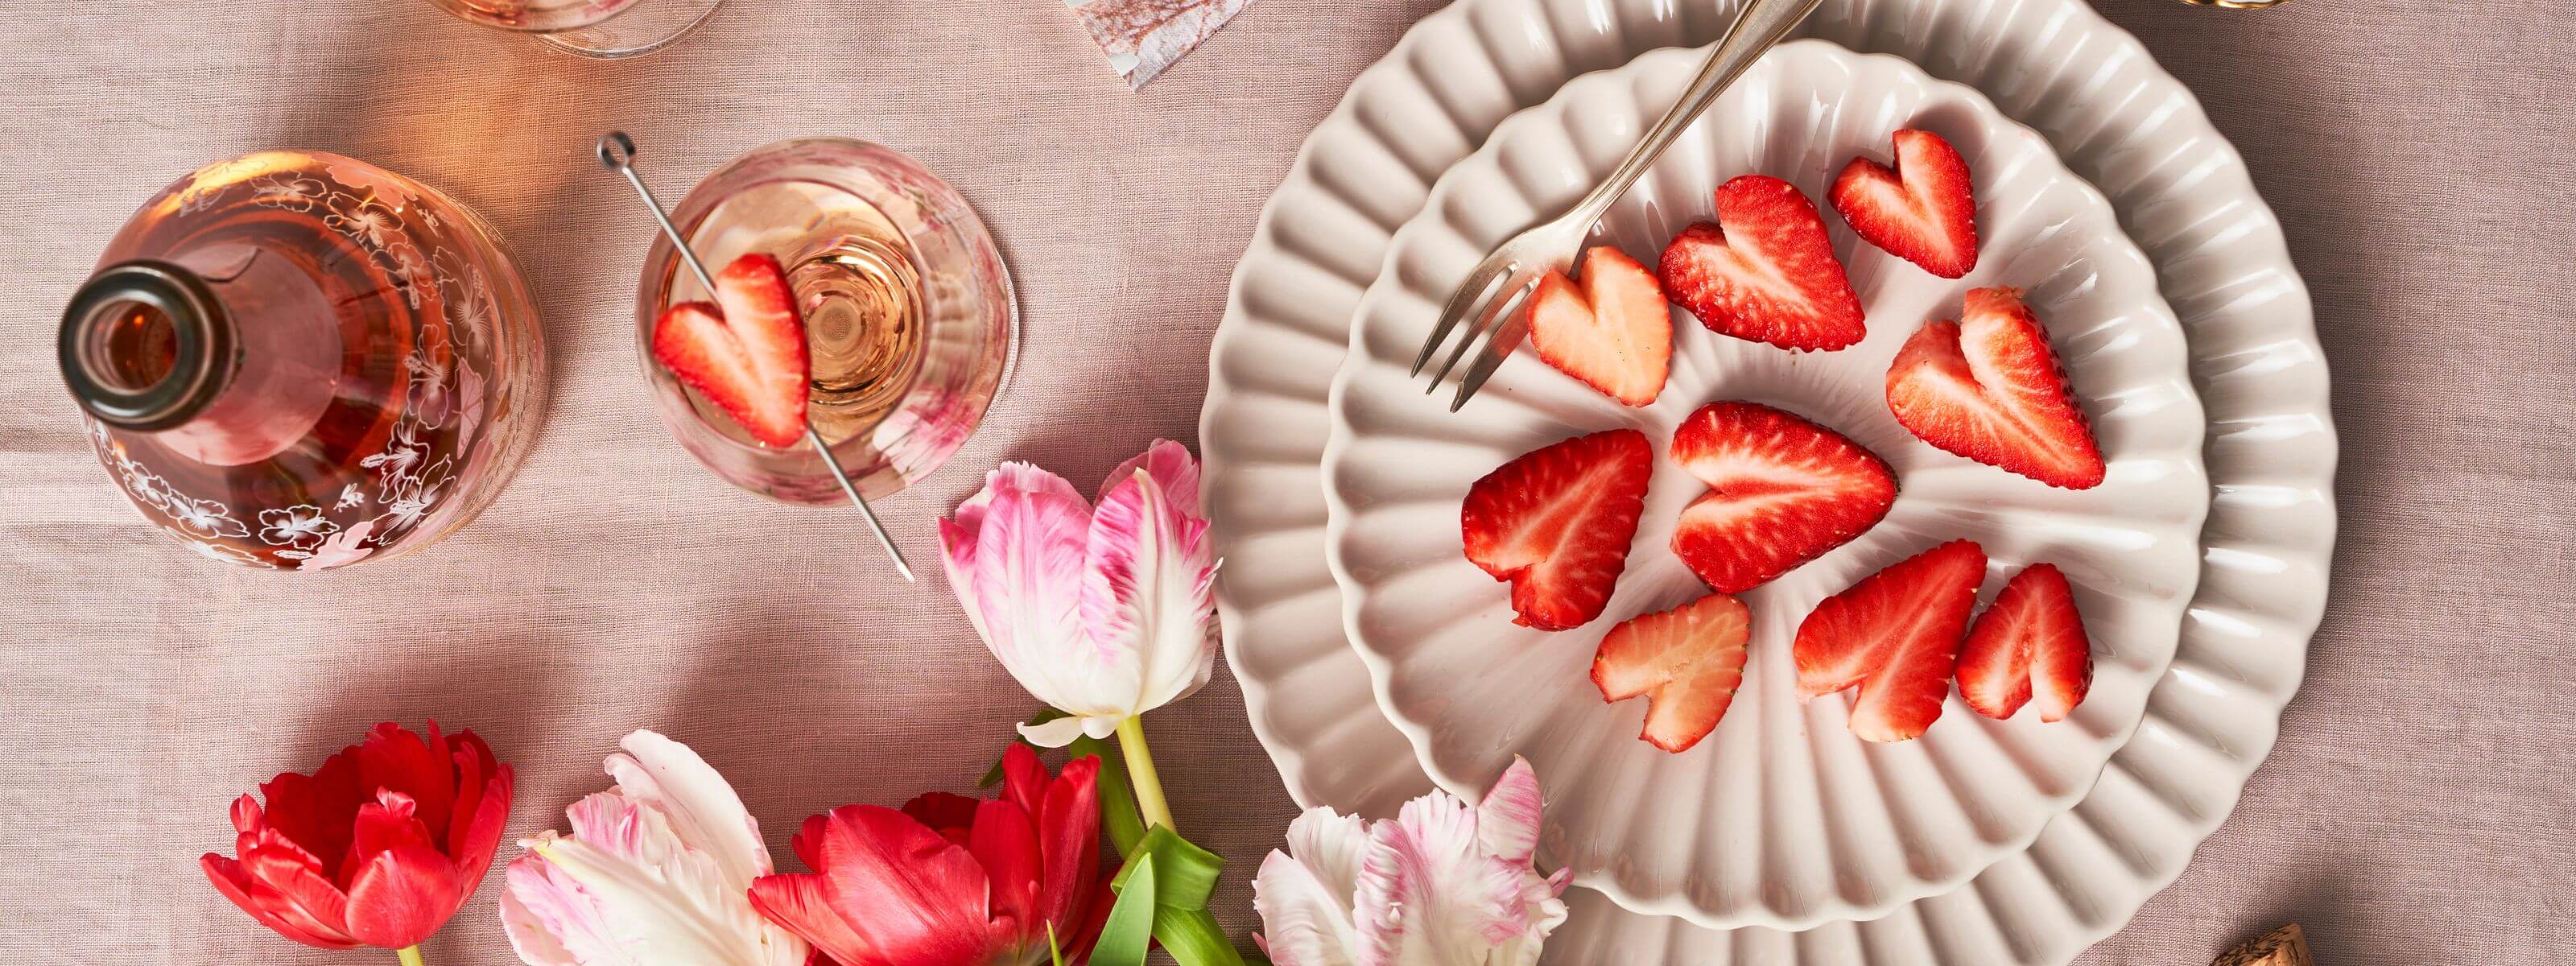 Tisch mit Schlumbgerger Spring Edition und Erdbeeren, welche in Herzform geschnitten wurden